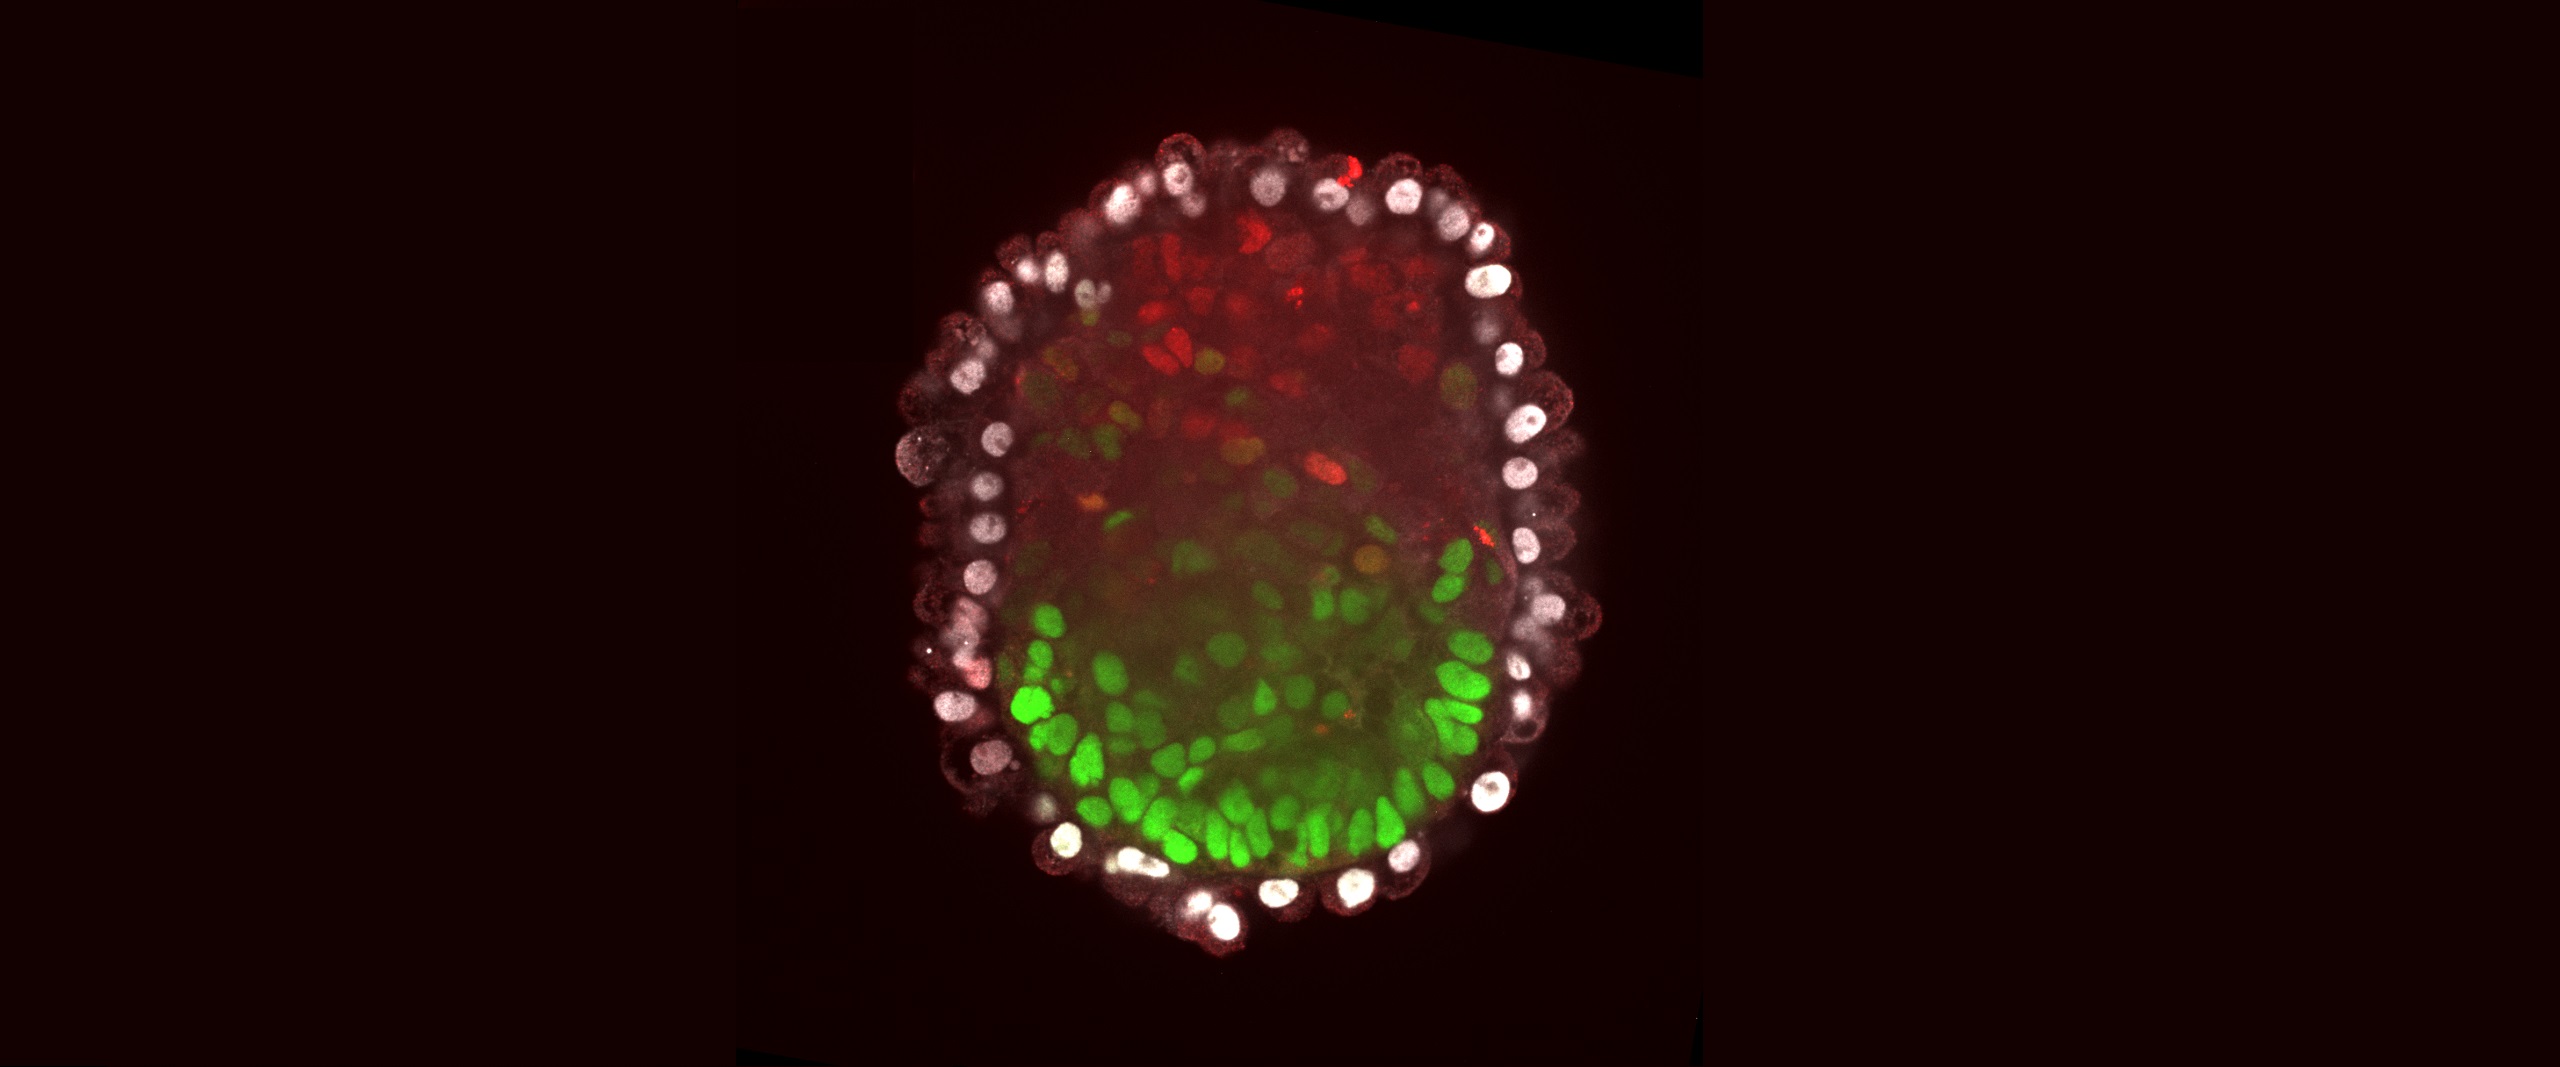 Stammzellen organisieren sich selbsttätig zum Embryoid